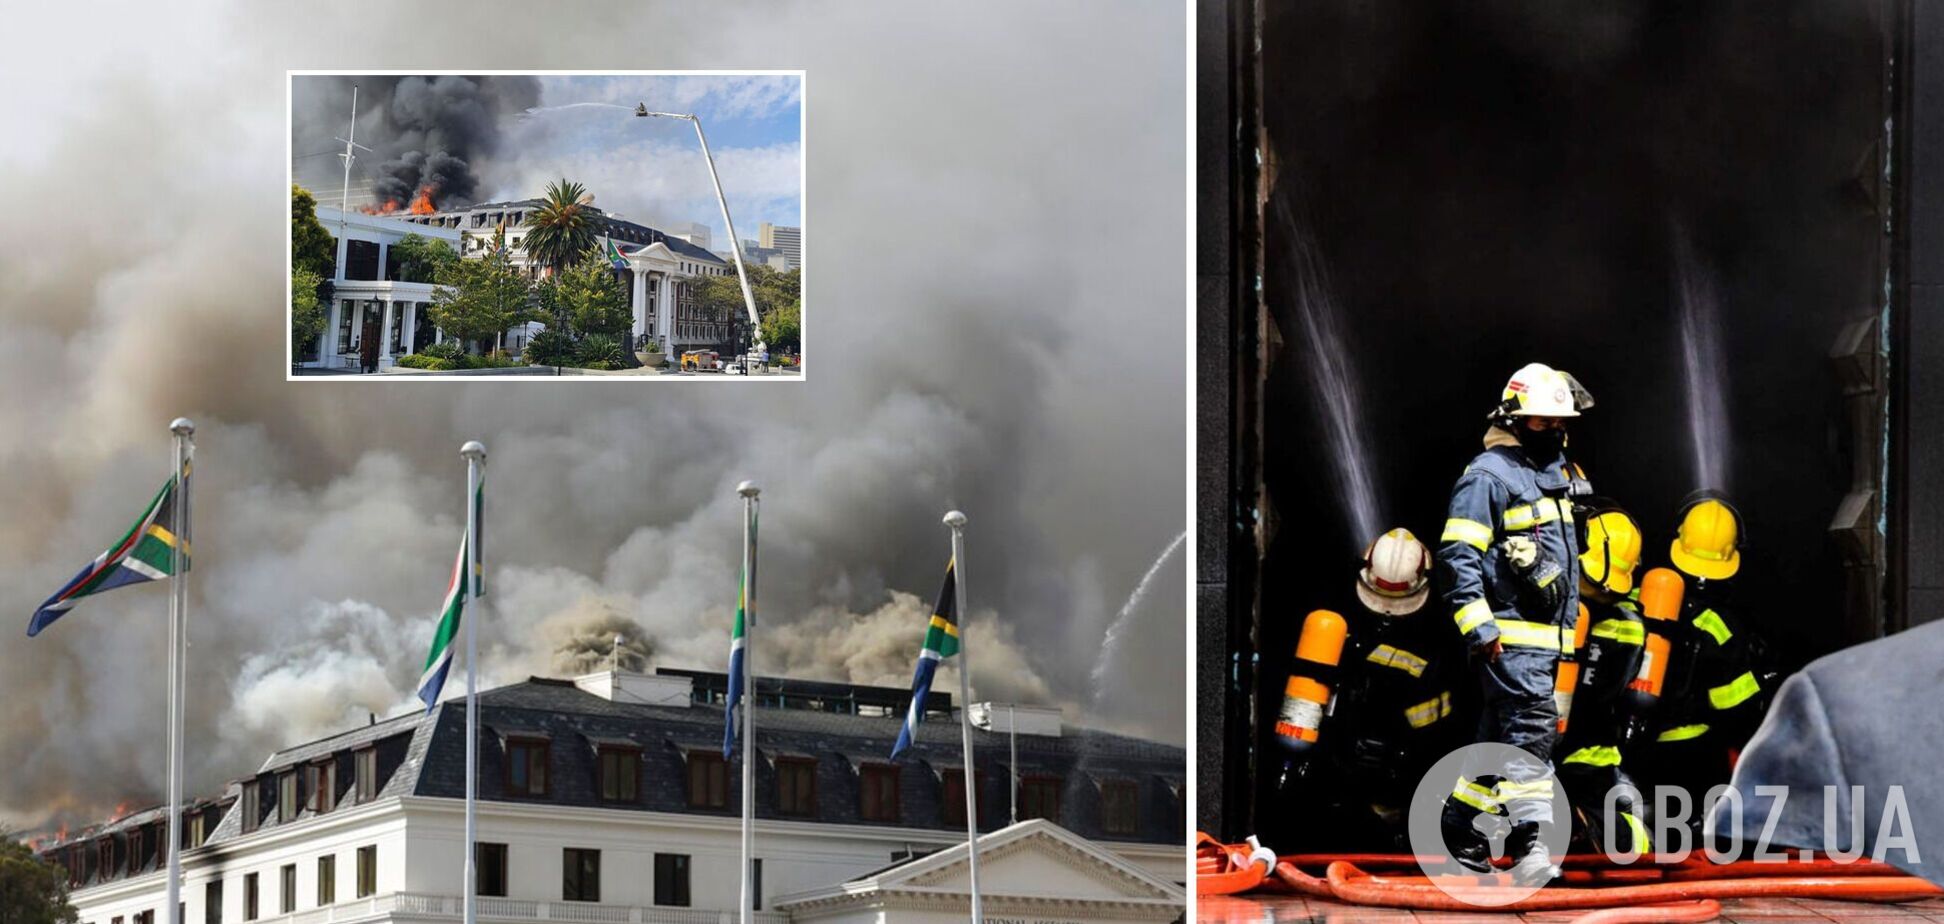 В здании парламента ЮАР снова вспыхнул пожар, угроза обрушения возросла. Фото и видео